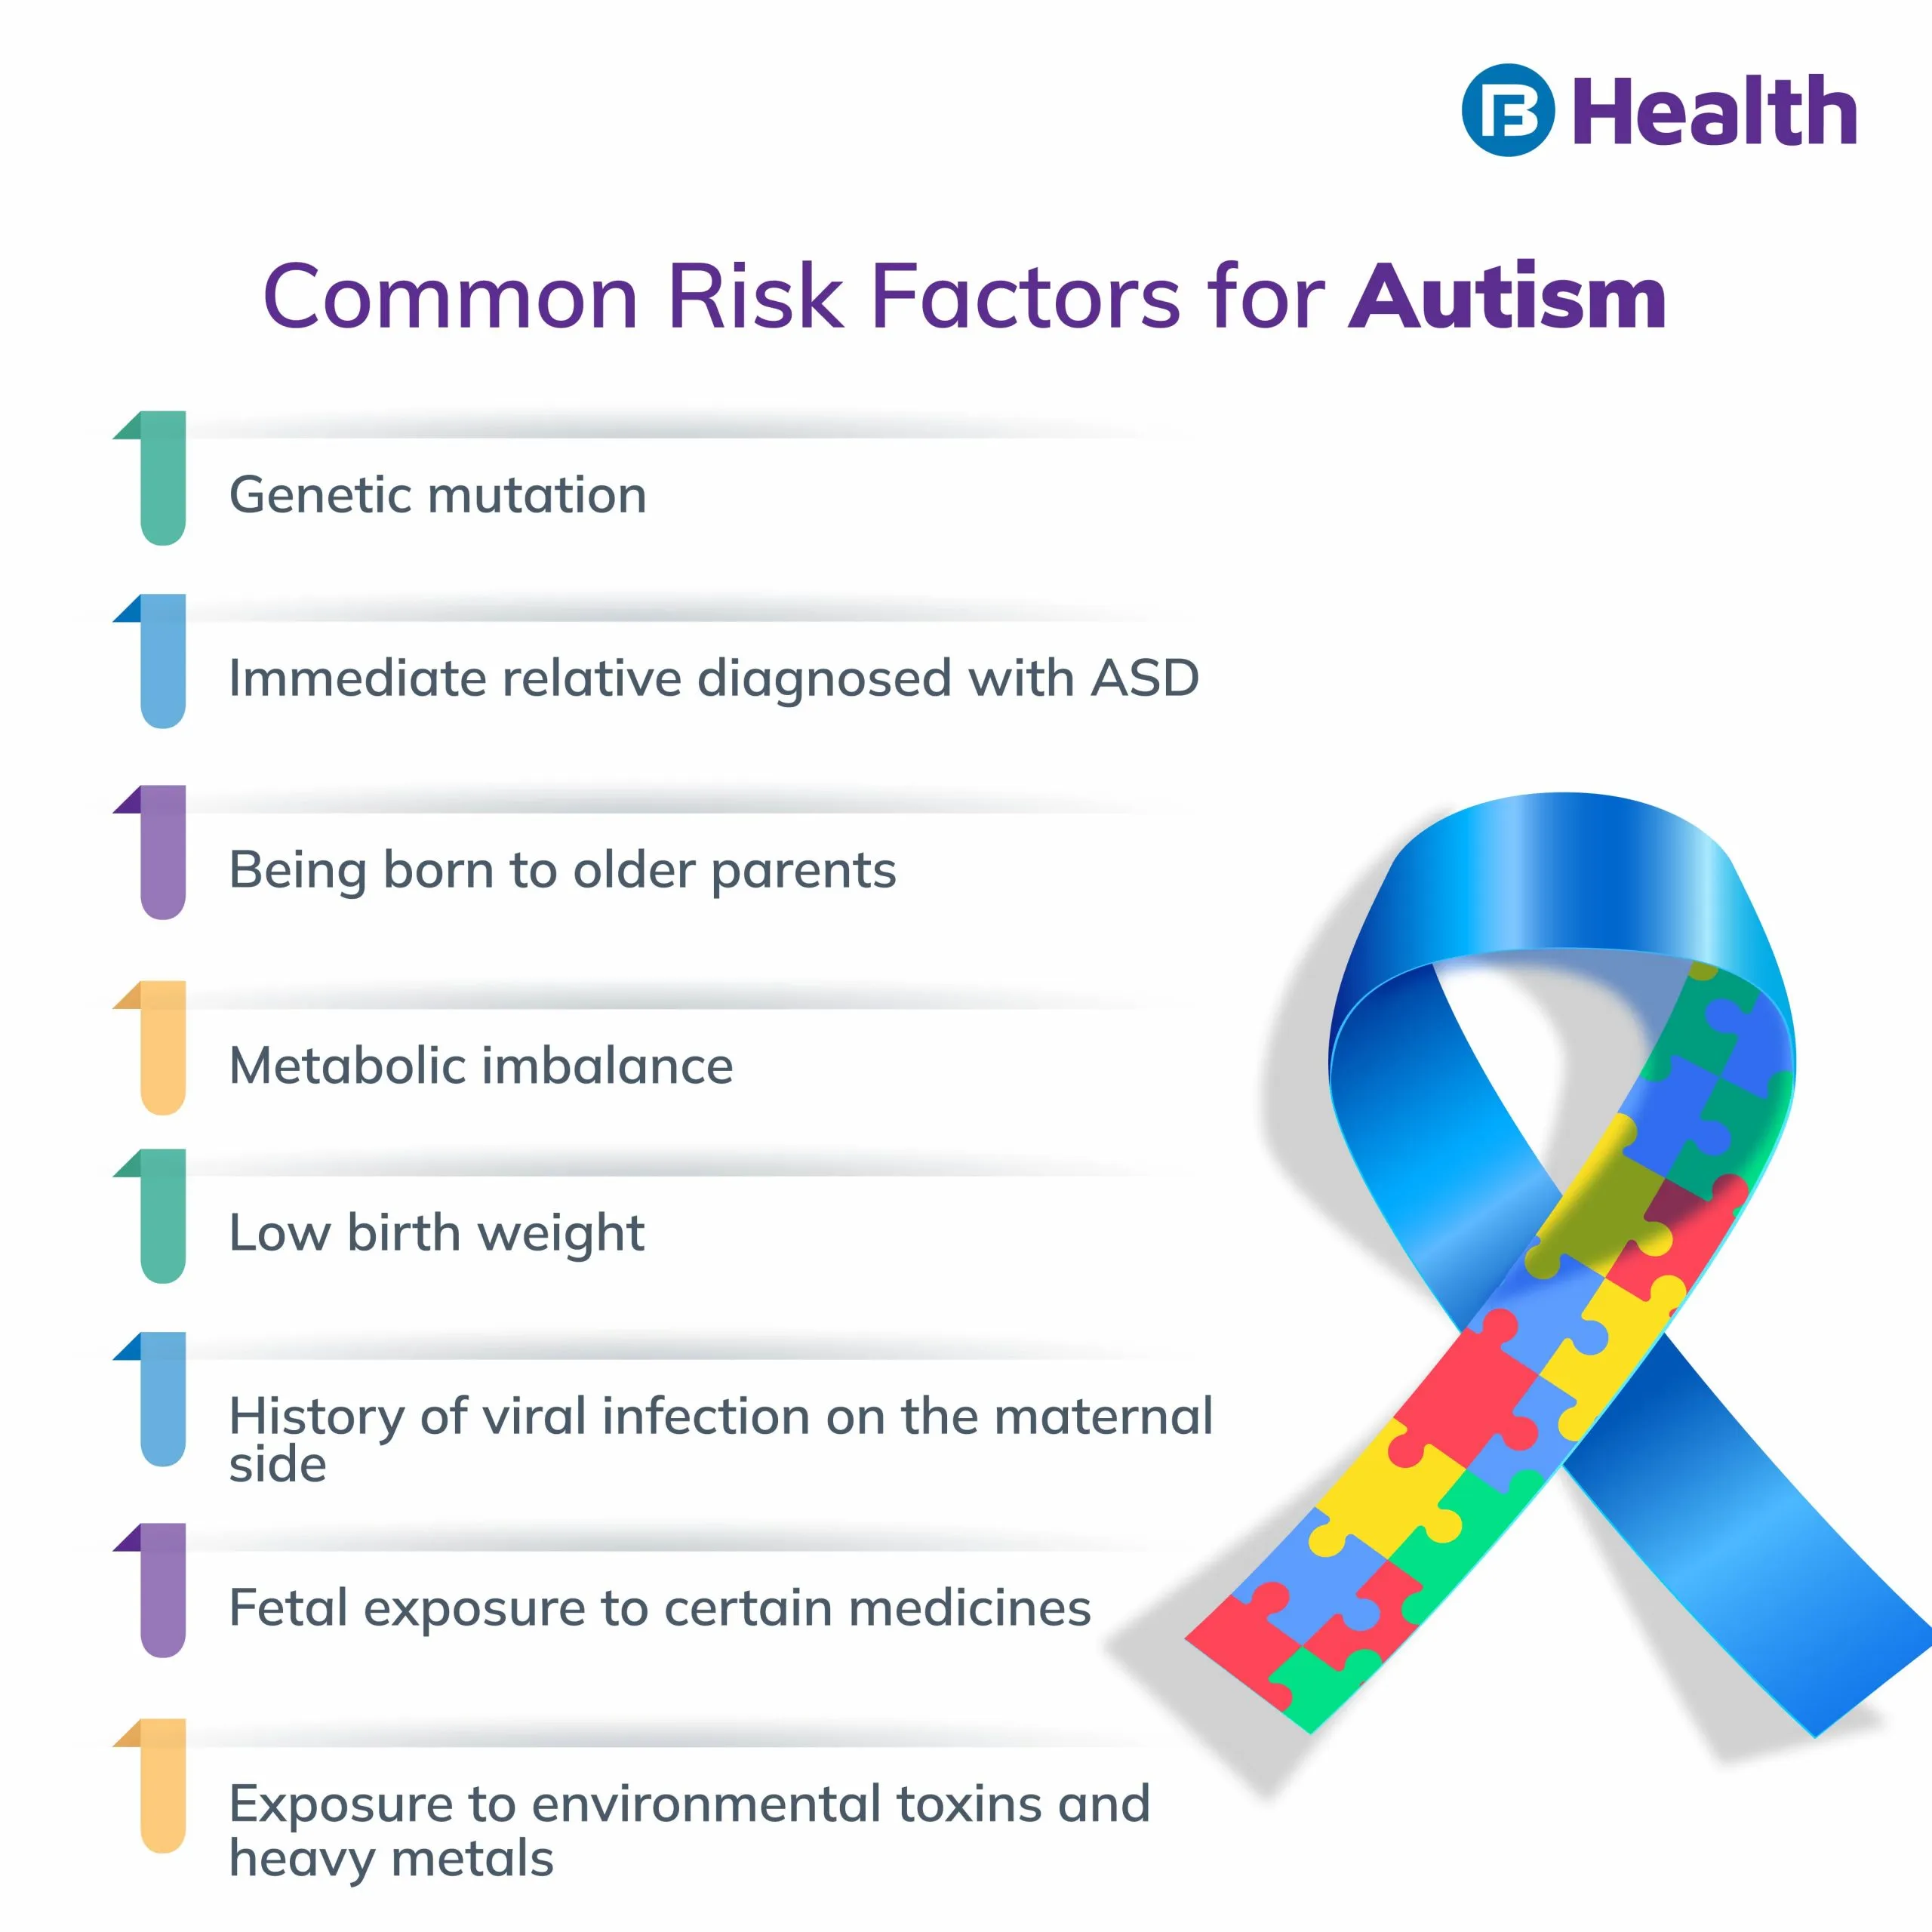 Risk factors for Autism